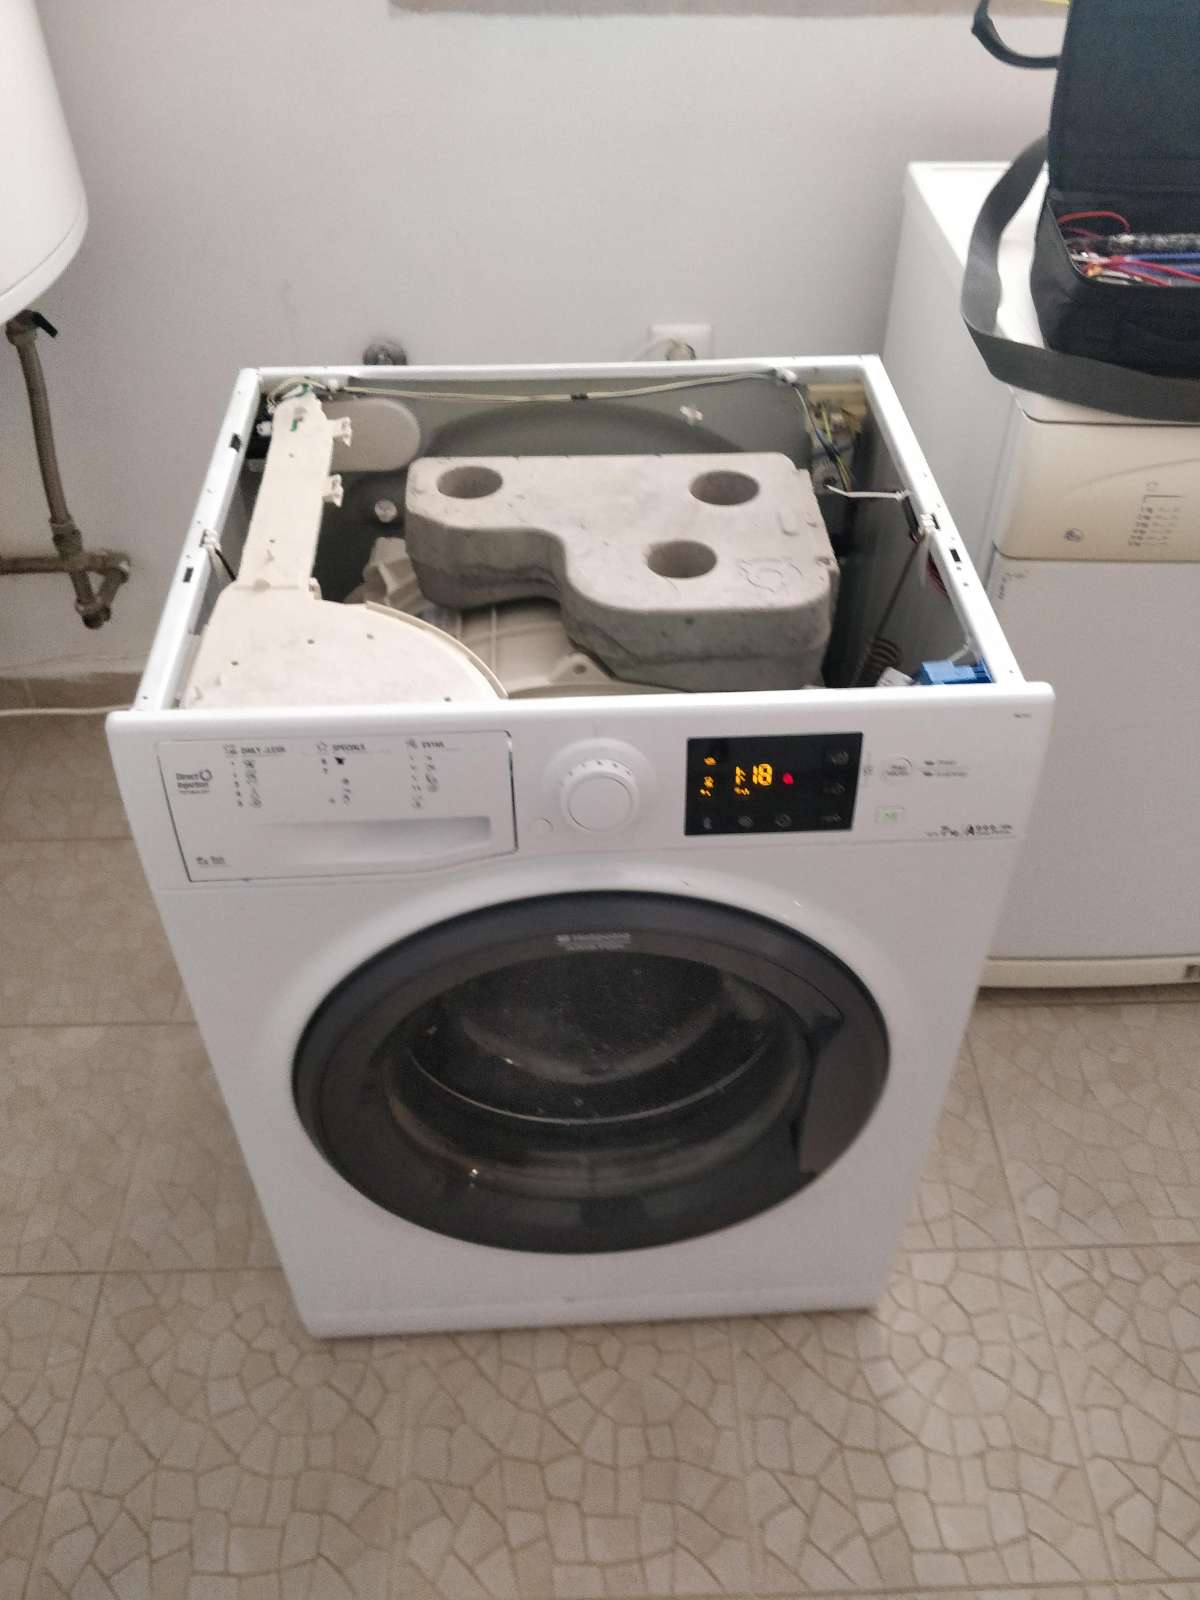 José Sanchez - Sintra - Reparação ou Manutenção de Máquina de Lavar Roupa